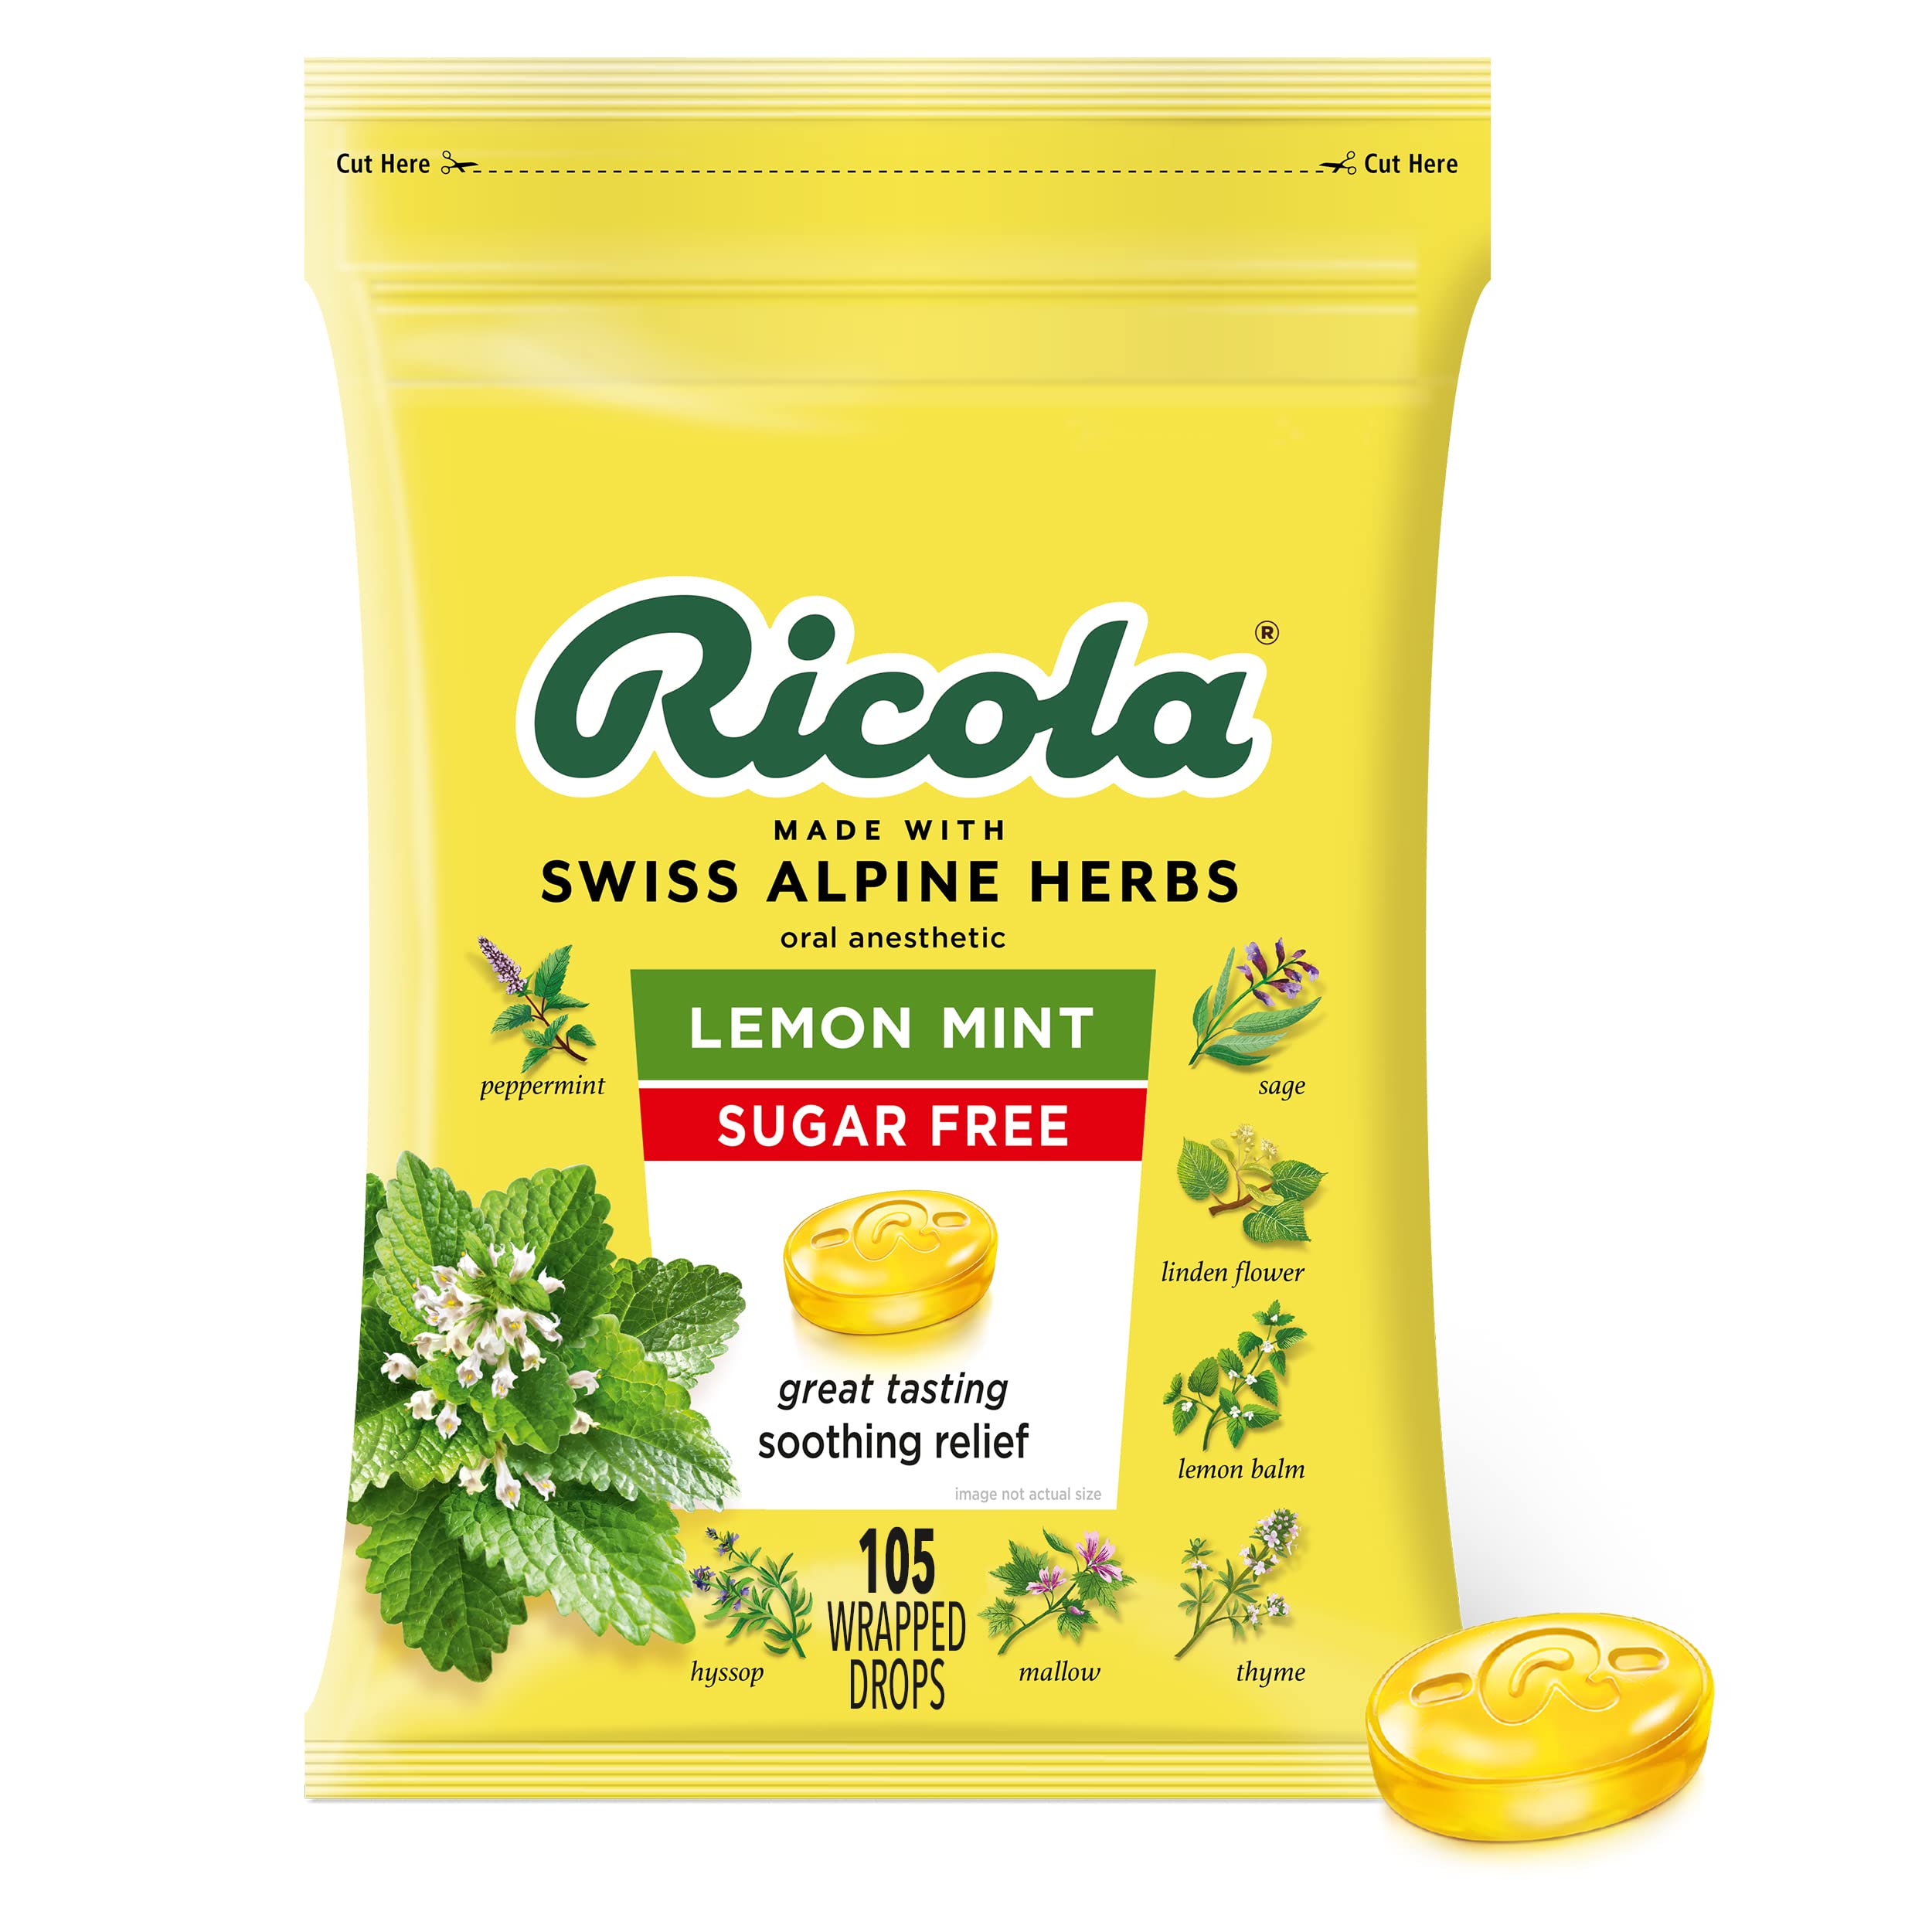 Ricola Sugar Free Lemon Mint Herbal Cough Suppressant Throat Drops, 105ct Bag